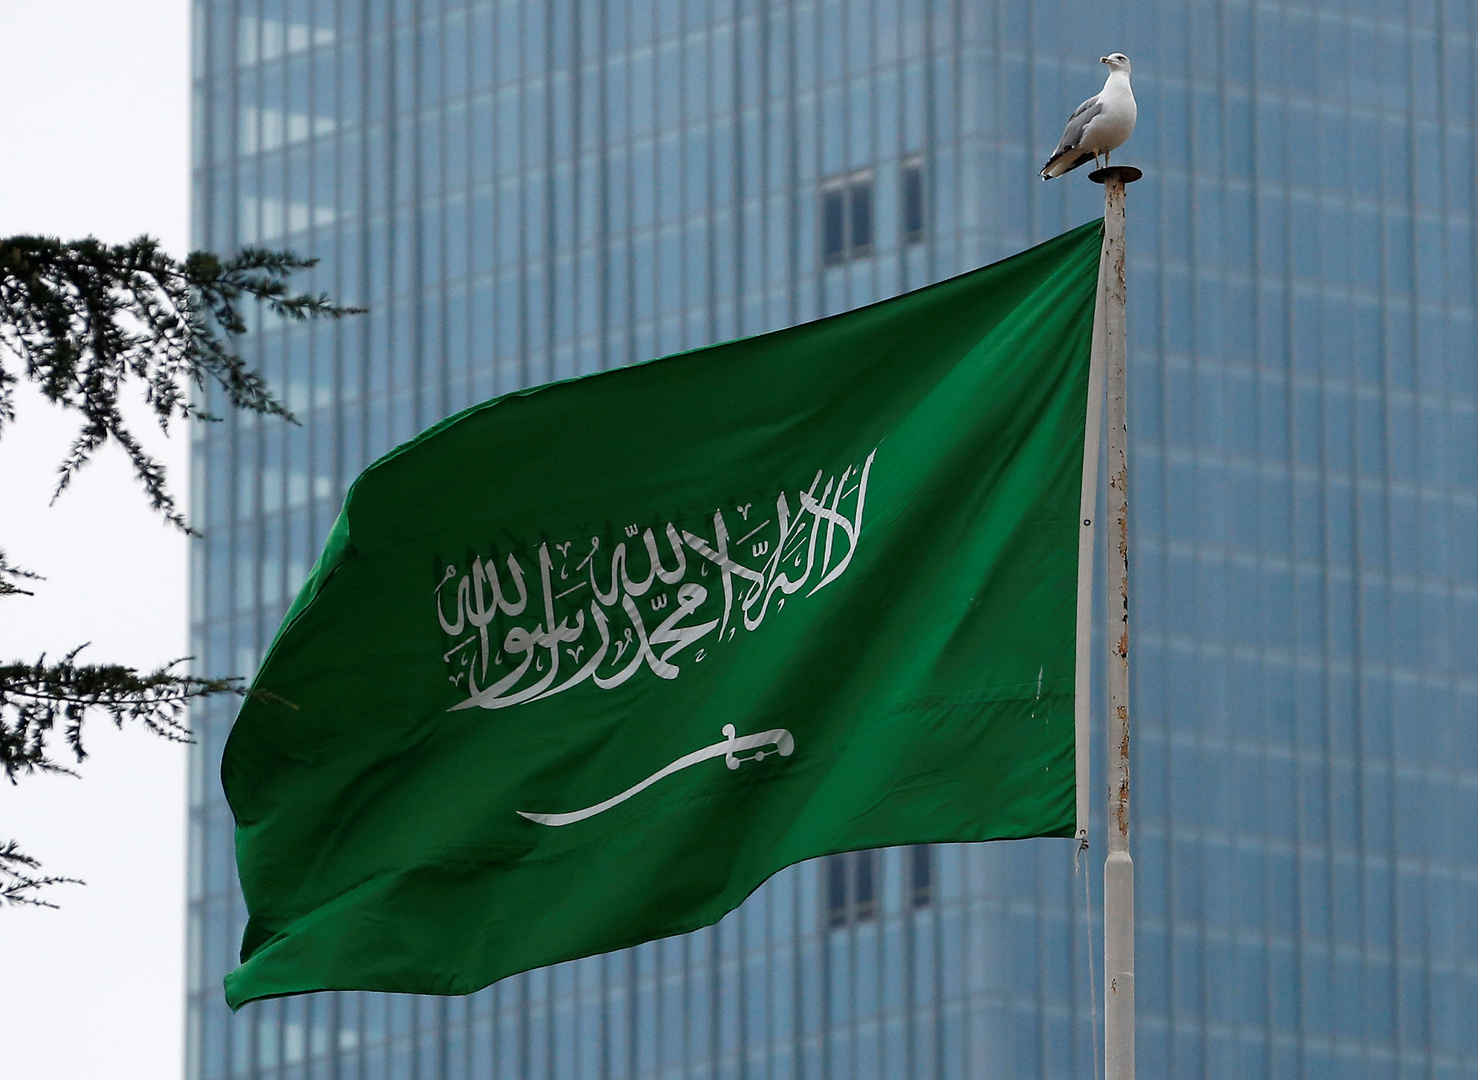 إطلاق نار على السفارة السعودية في هولندا والشرطة تفتح تحقيقا